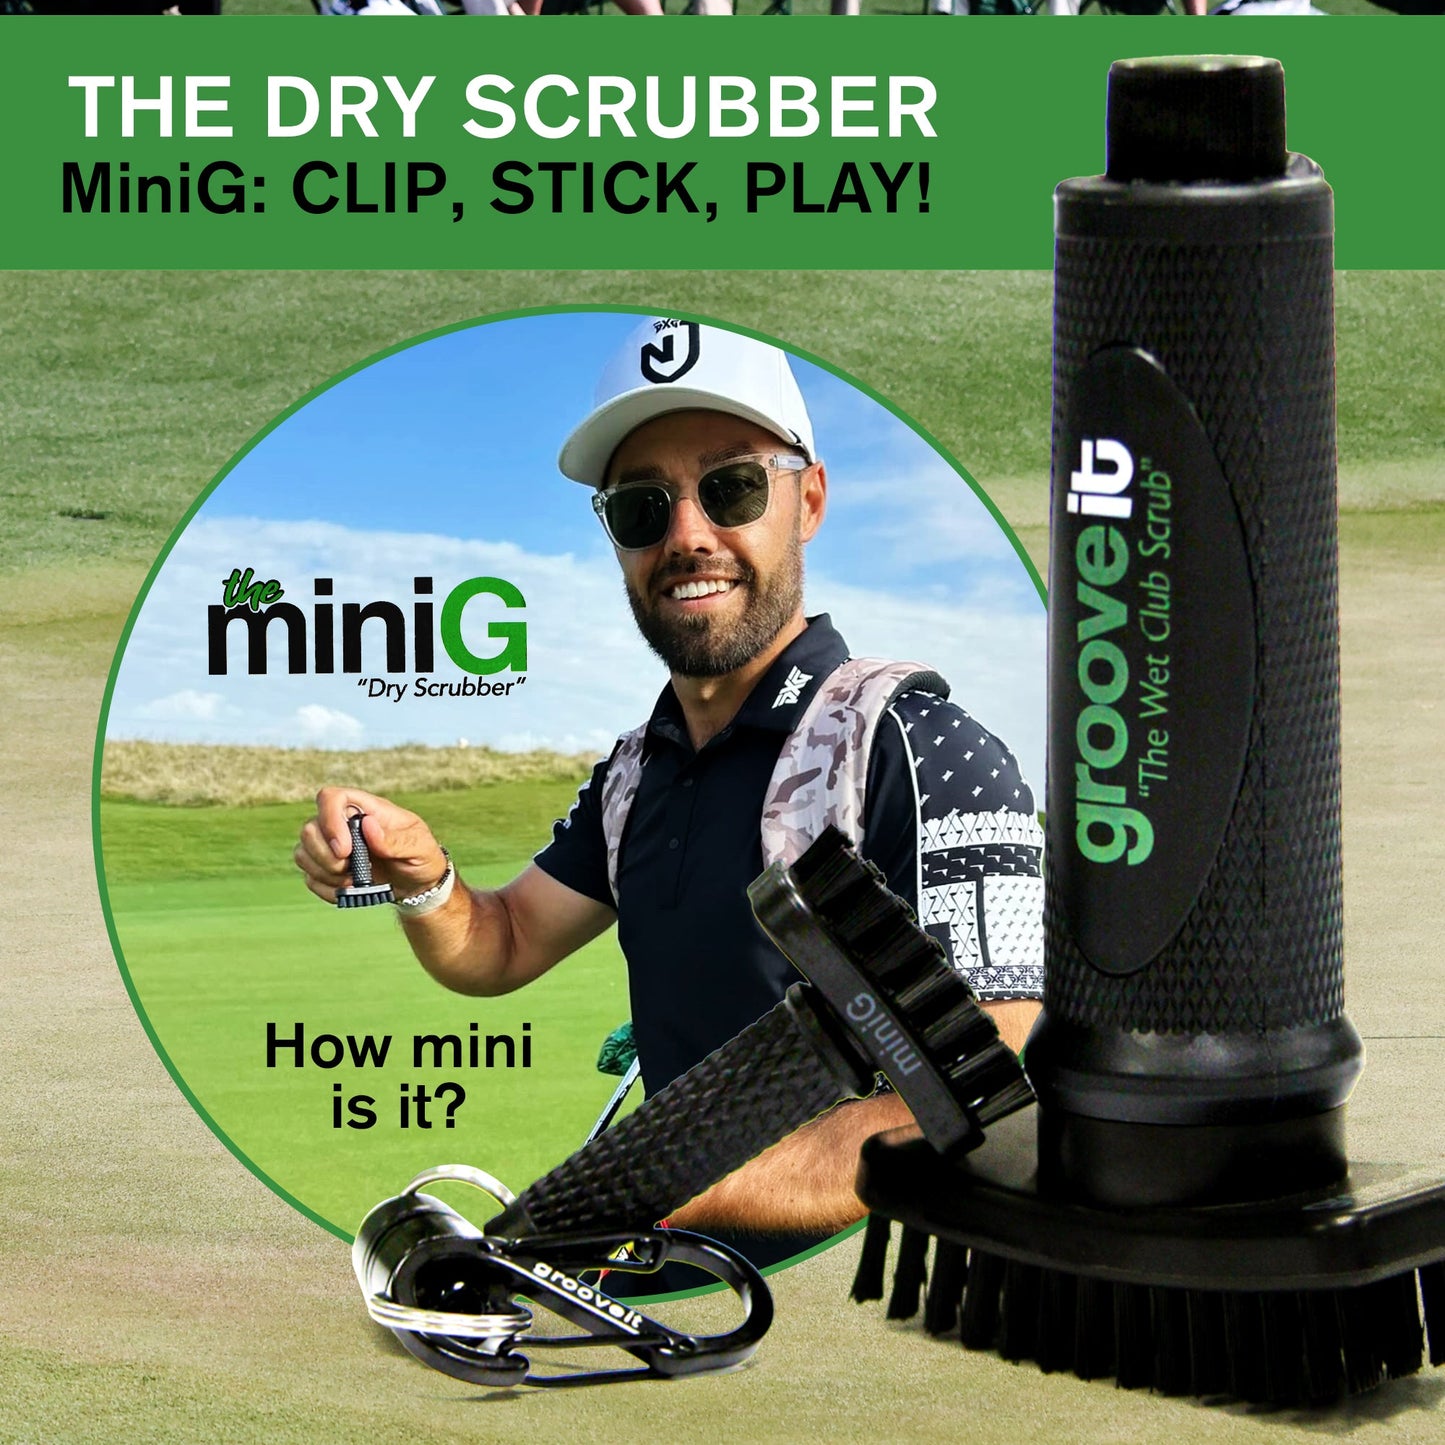 miniG - Grooveit "The Wet Club Scrub" - #golf_club_cleaner# - #golf_club_brush# - #golf_brush# - #grooveit# - #groove_it_brush# - #grooveit_brush# - #groove_cleaner# - #golf_club_cleaning_brush# - #go